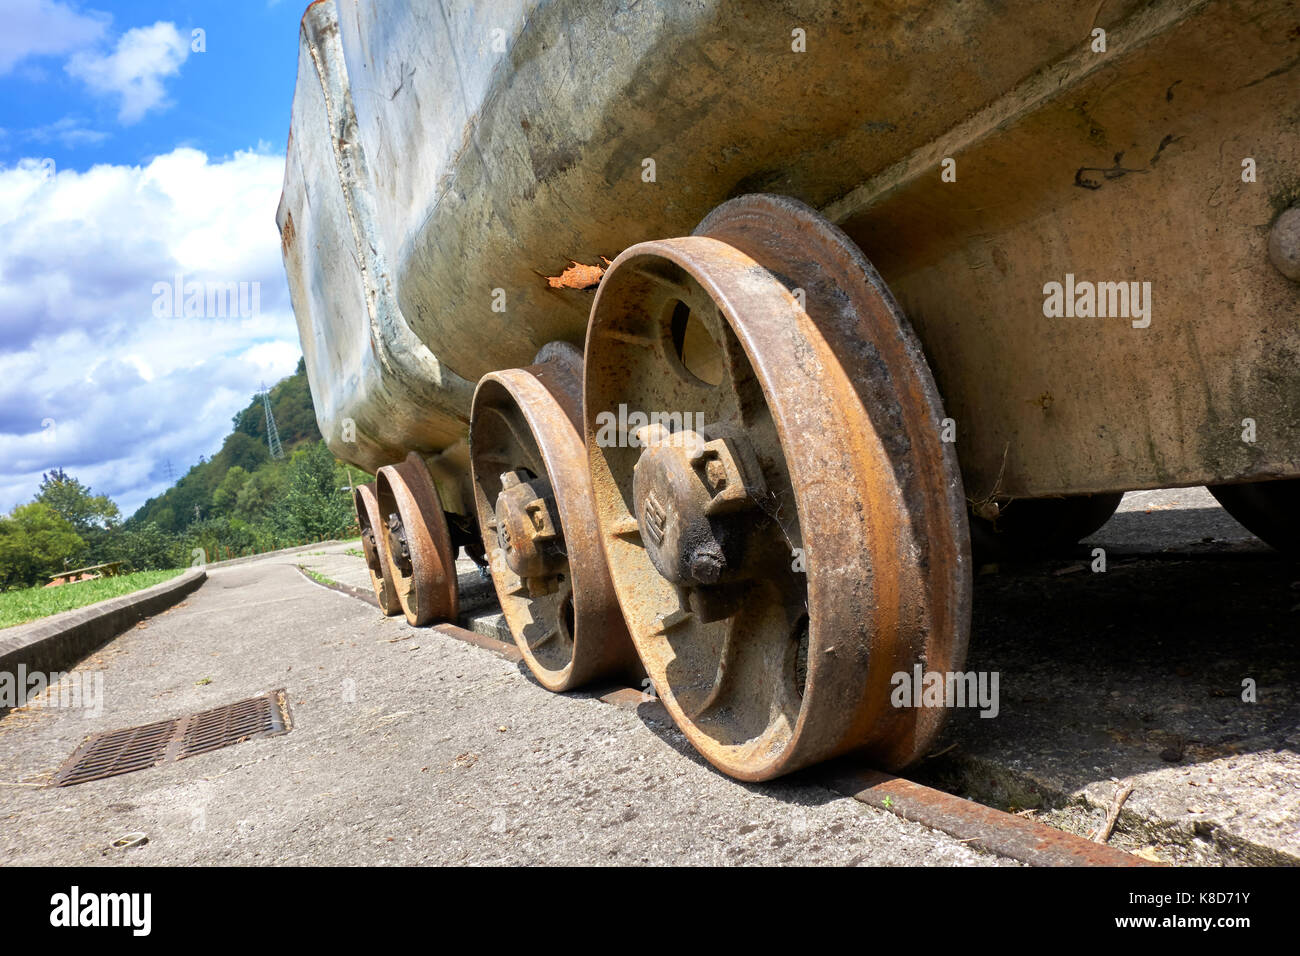 Mining train. Samuño Valley Ecomuseum and San Luis Pit. Ciañu (Langreo). Asturias. Spain. Stock Photo